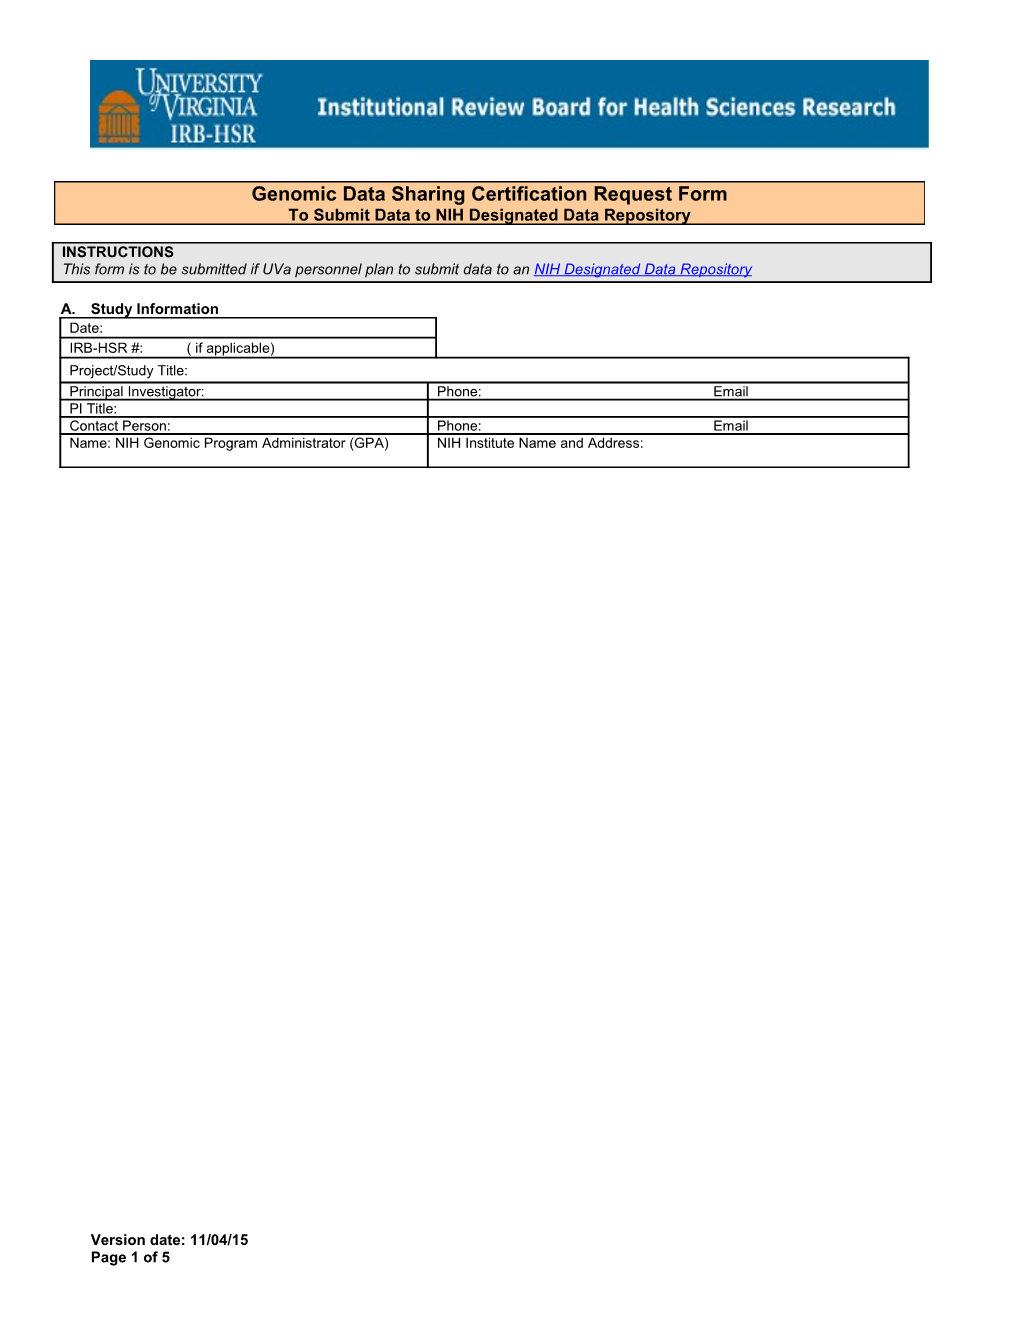 IRB-HSR Grant Information Form